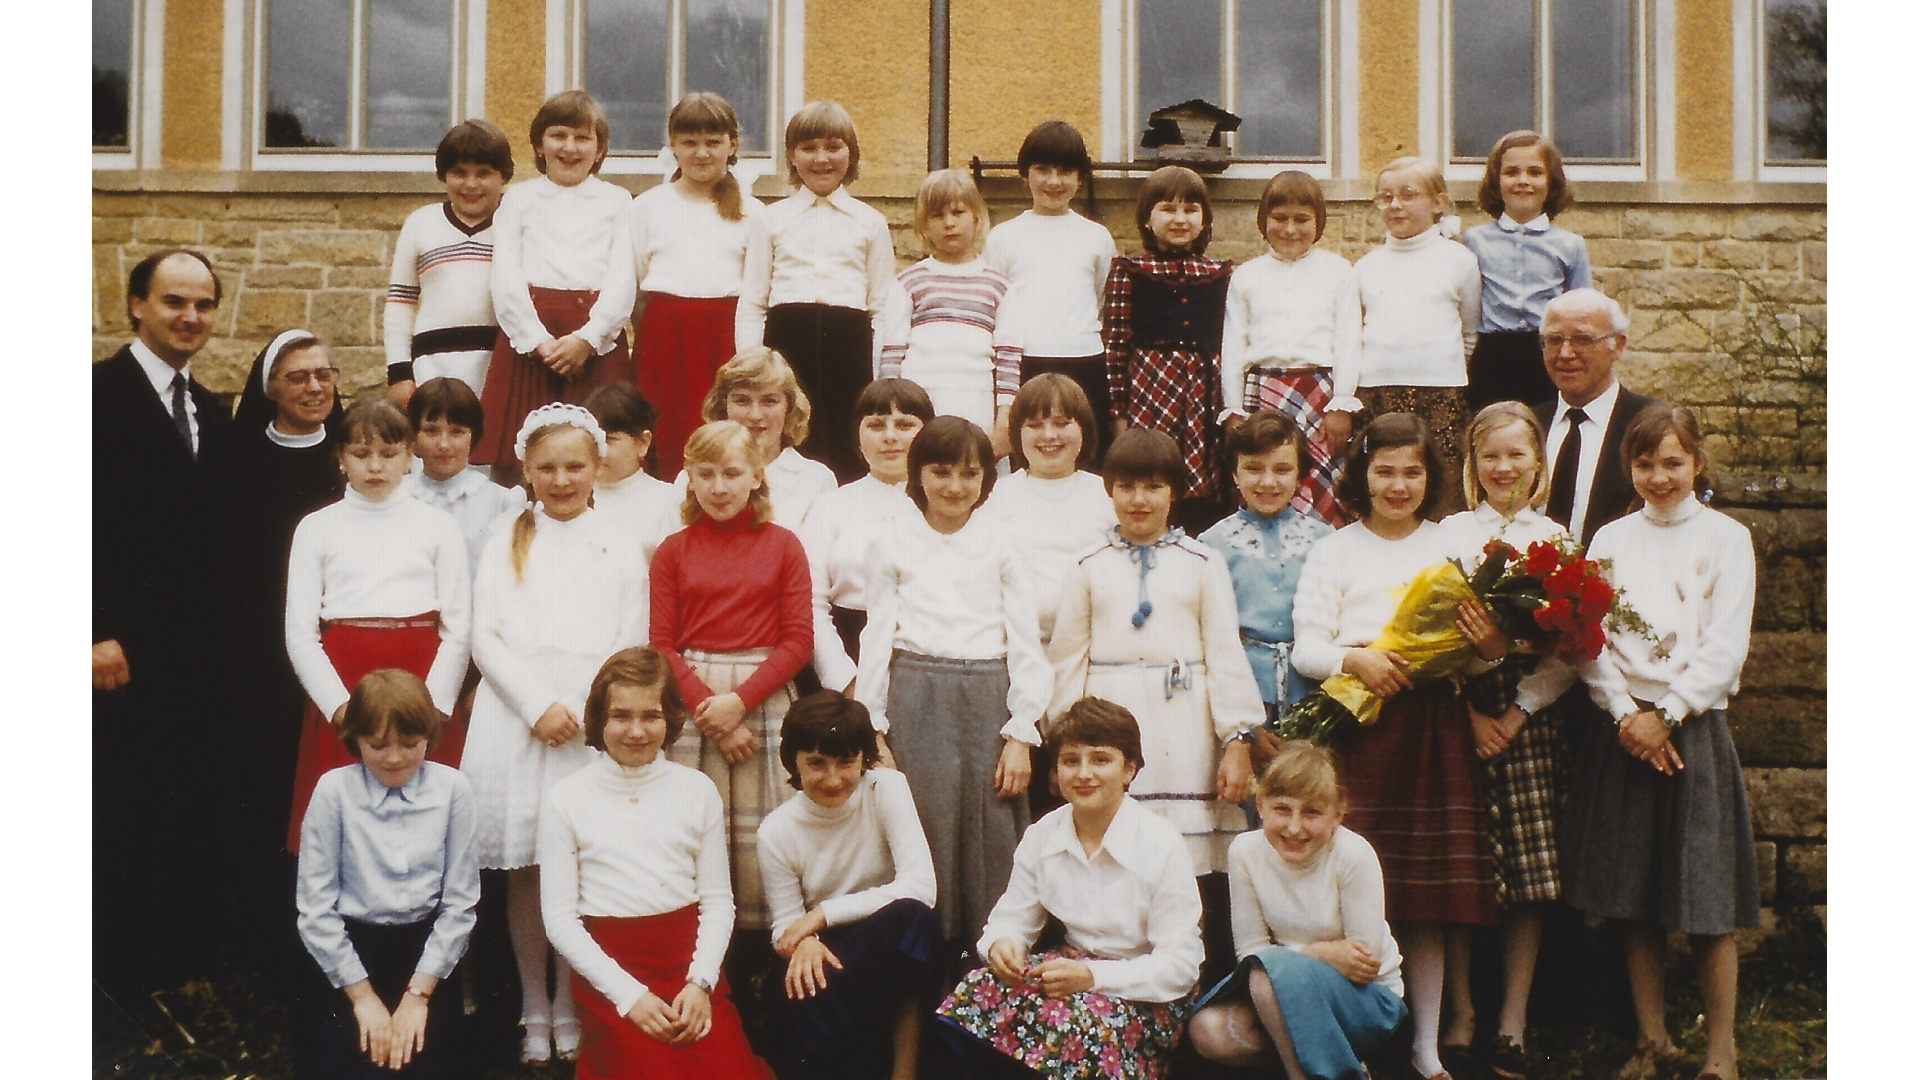 Verabschiedung der Förderklasse 1982. Foto: Archiv Arme Schulschwestern